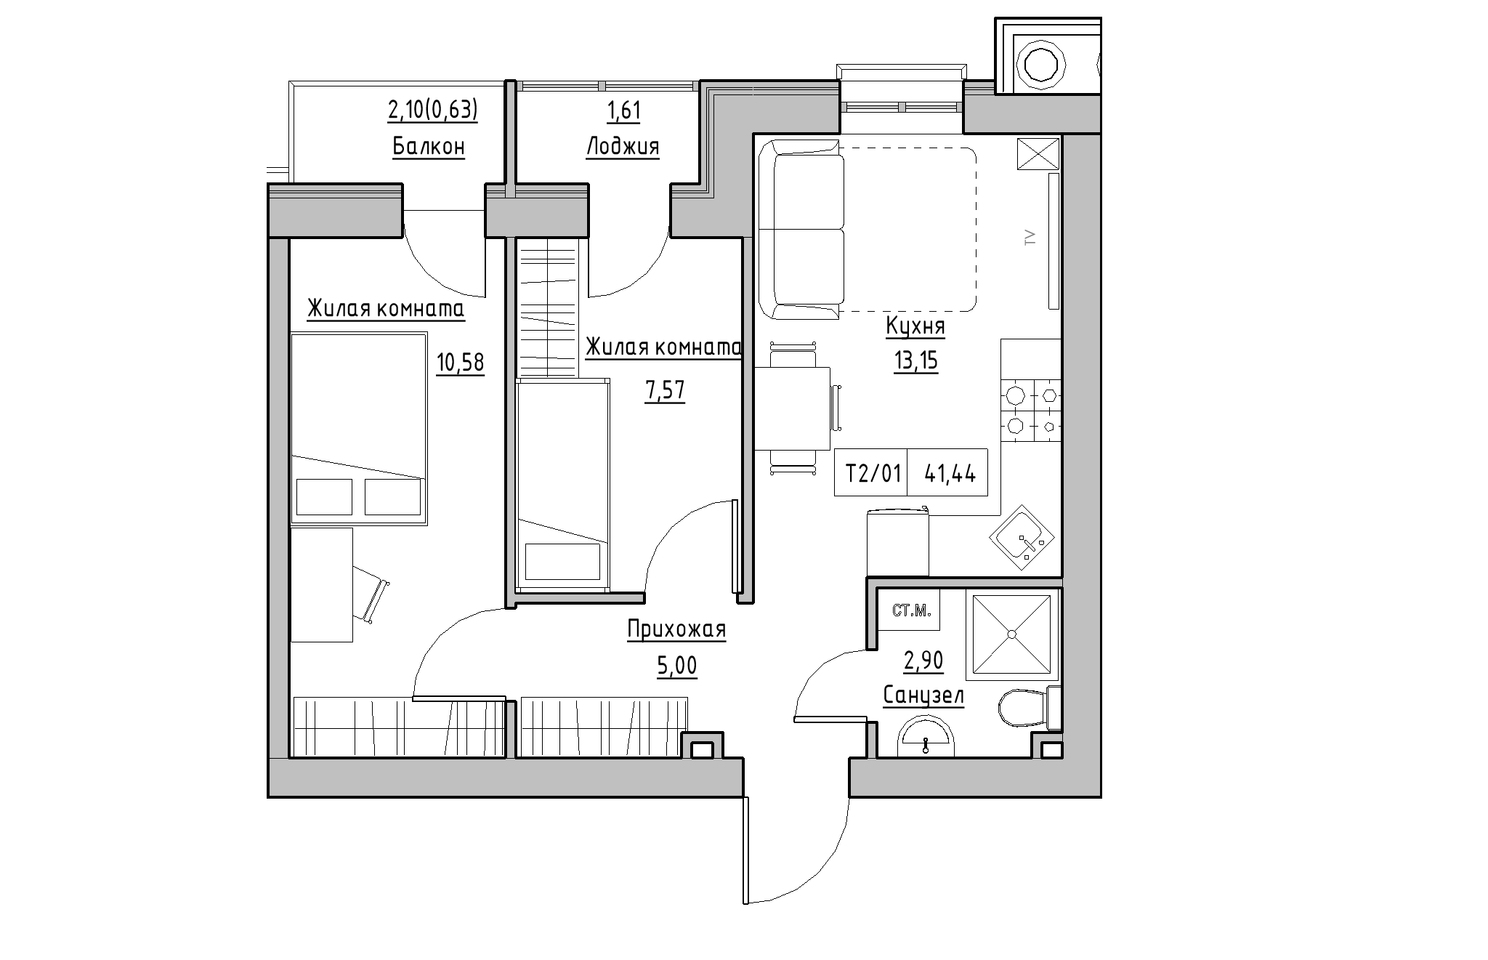 Планування 2-к квартира площею 41.44м2, KS-010-04/0005.